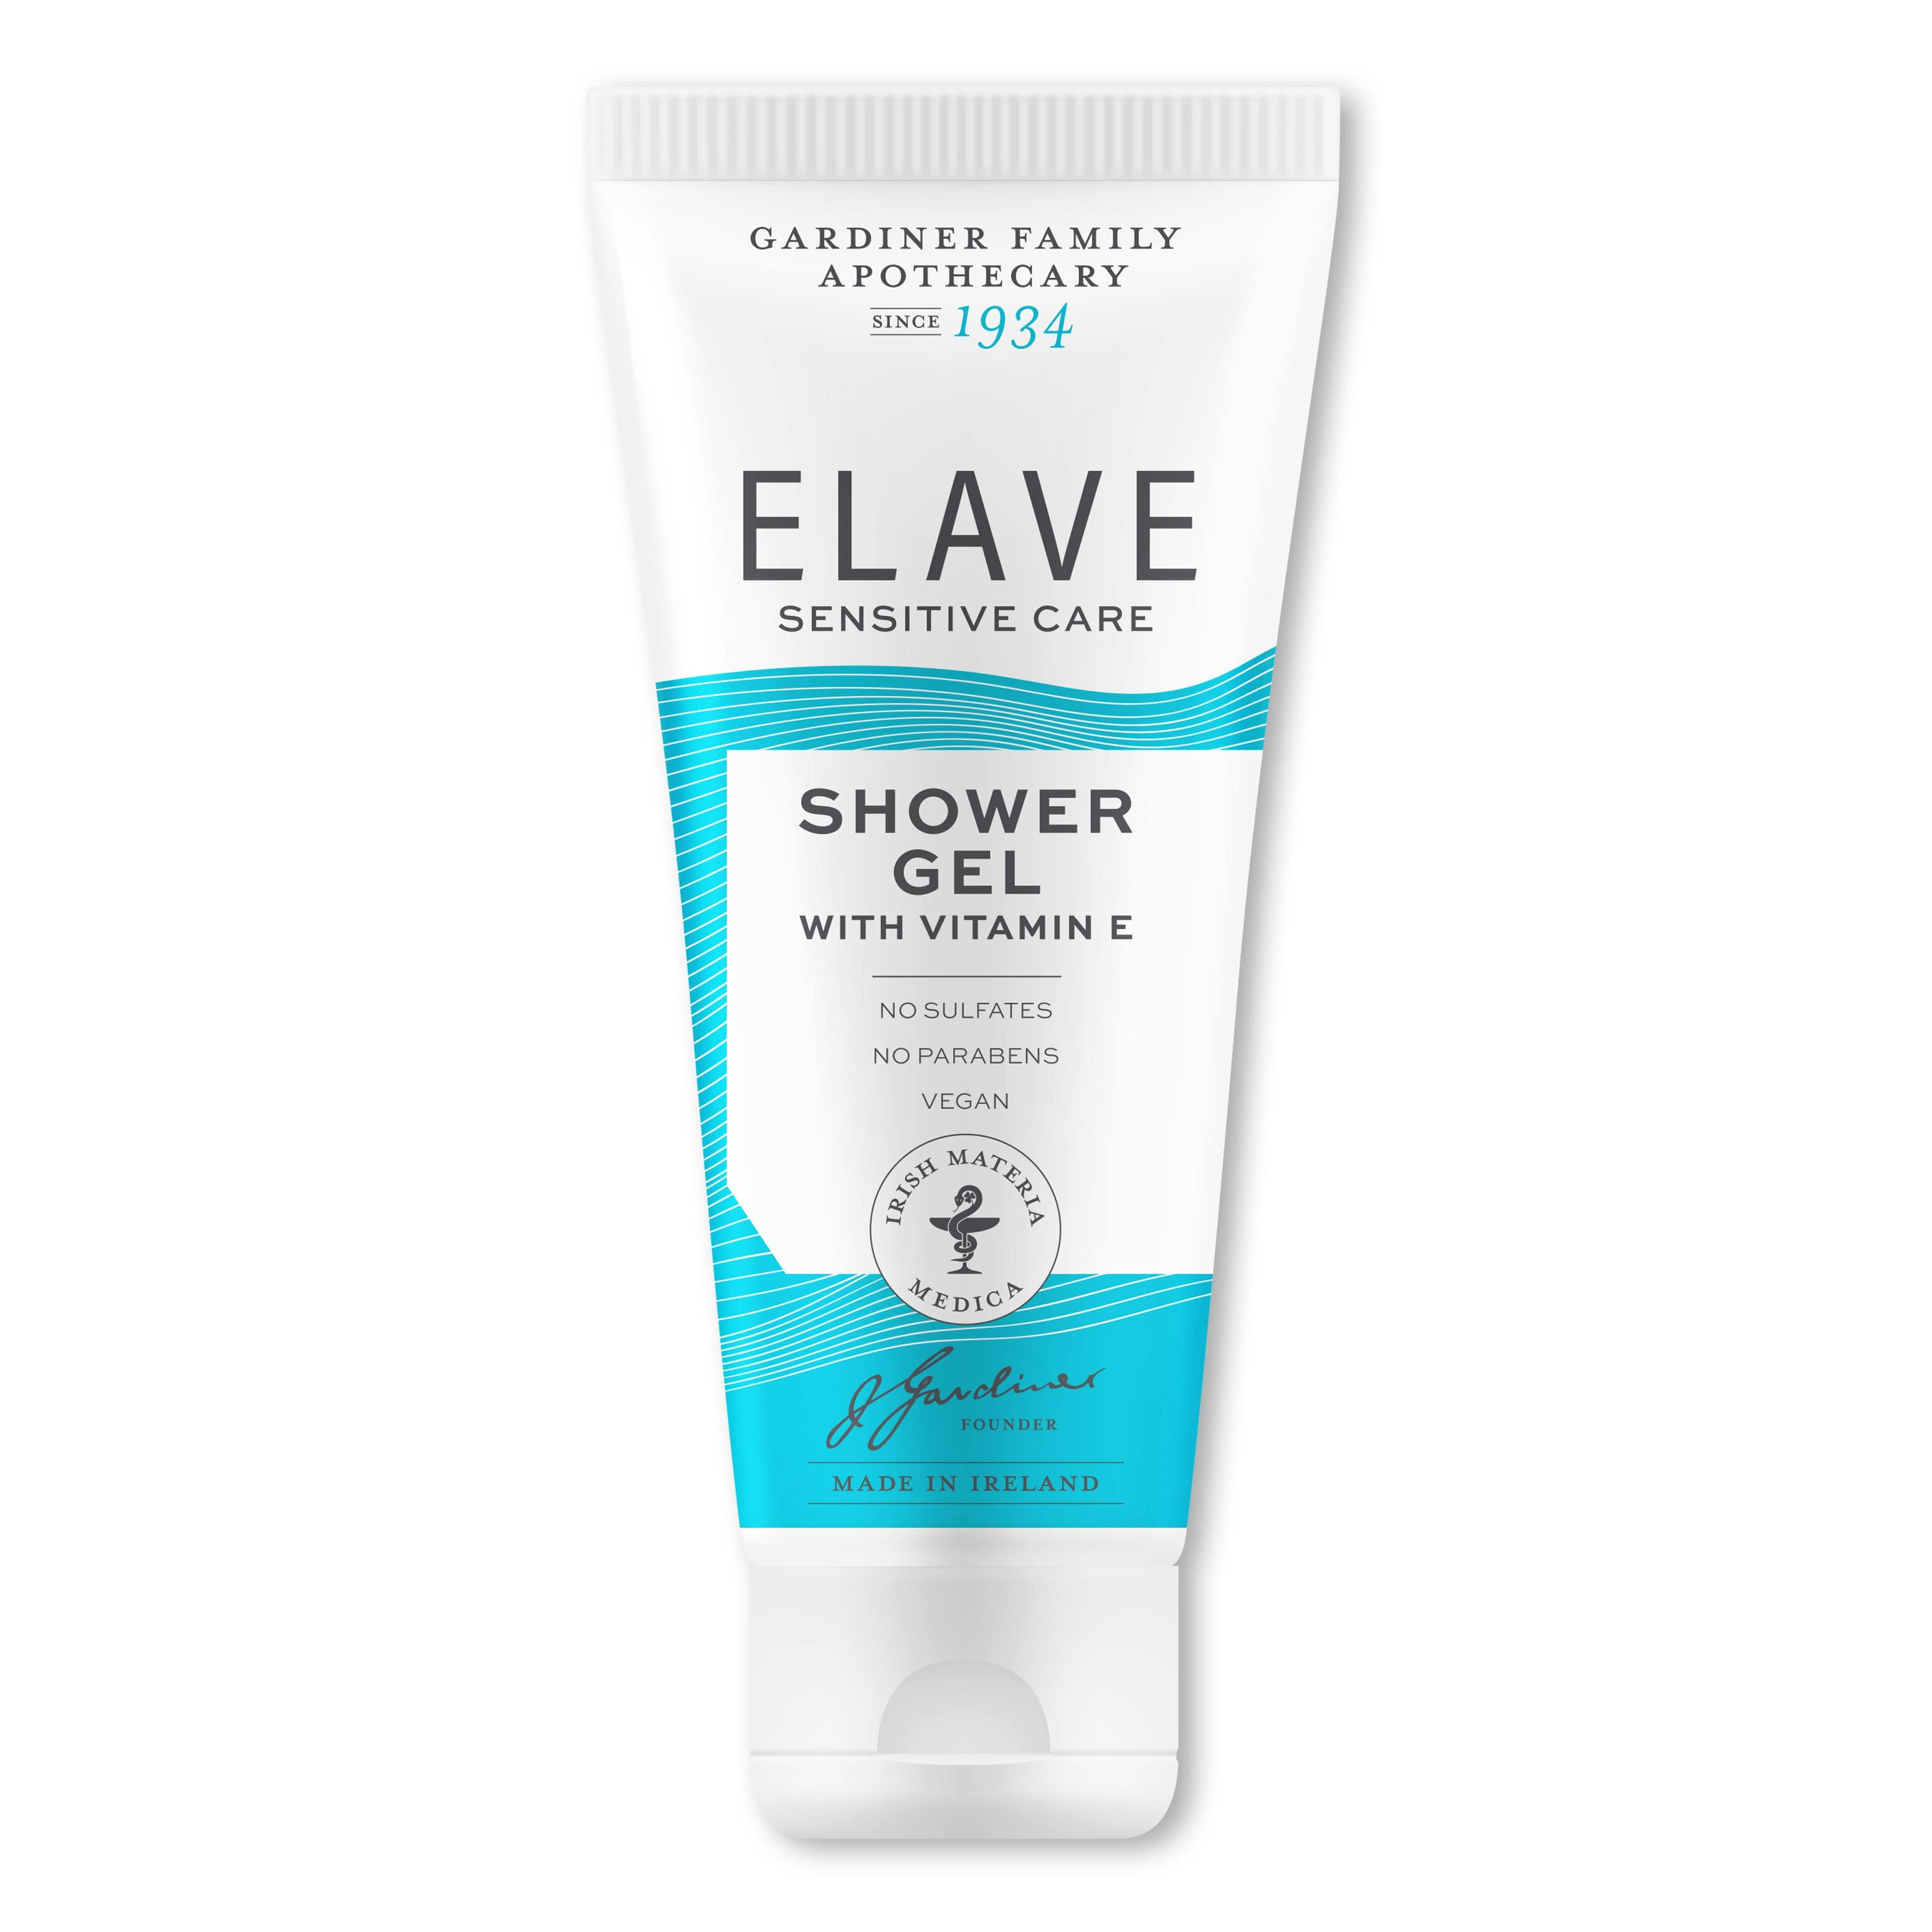 Elave Sensitive Shower Gel (250ml)